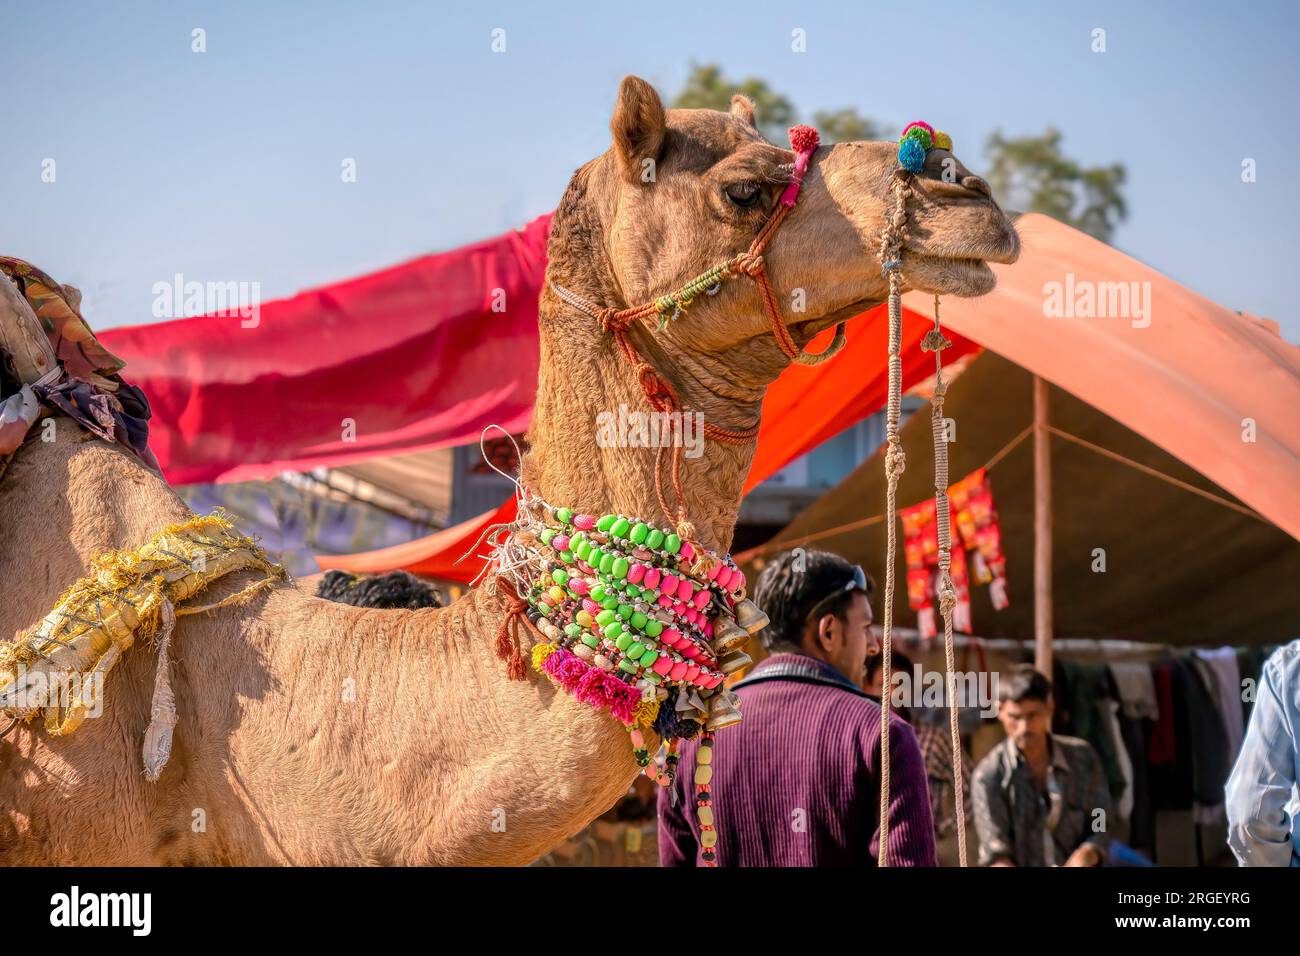 Pushkar, Inde - 19 novembre 2015. Un chameau habillé de colliers et pompons colorés pour un concours de beauté à la foire annuelle de chameaux au Rajasthan. Banque D'Images